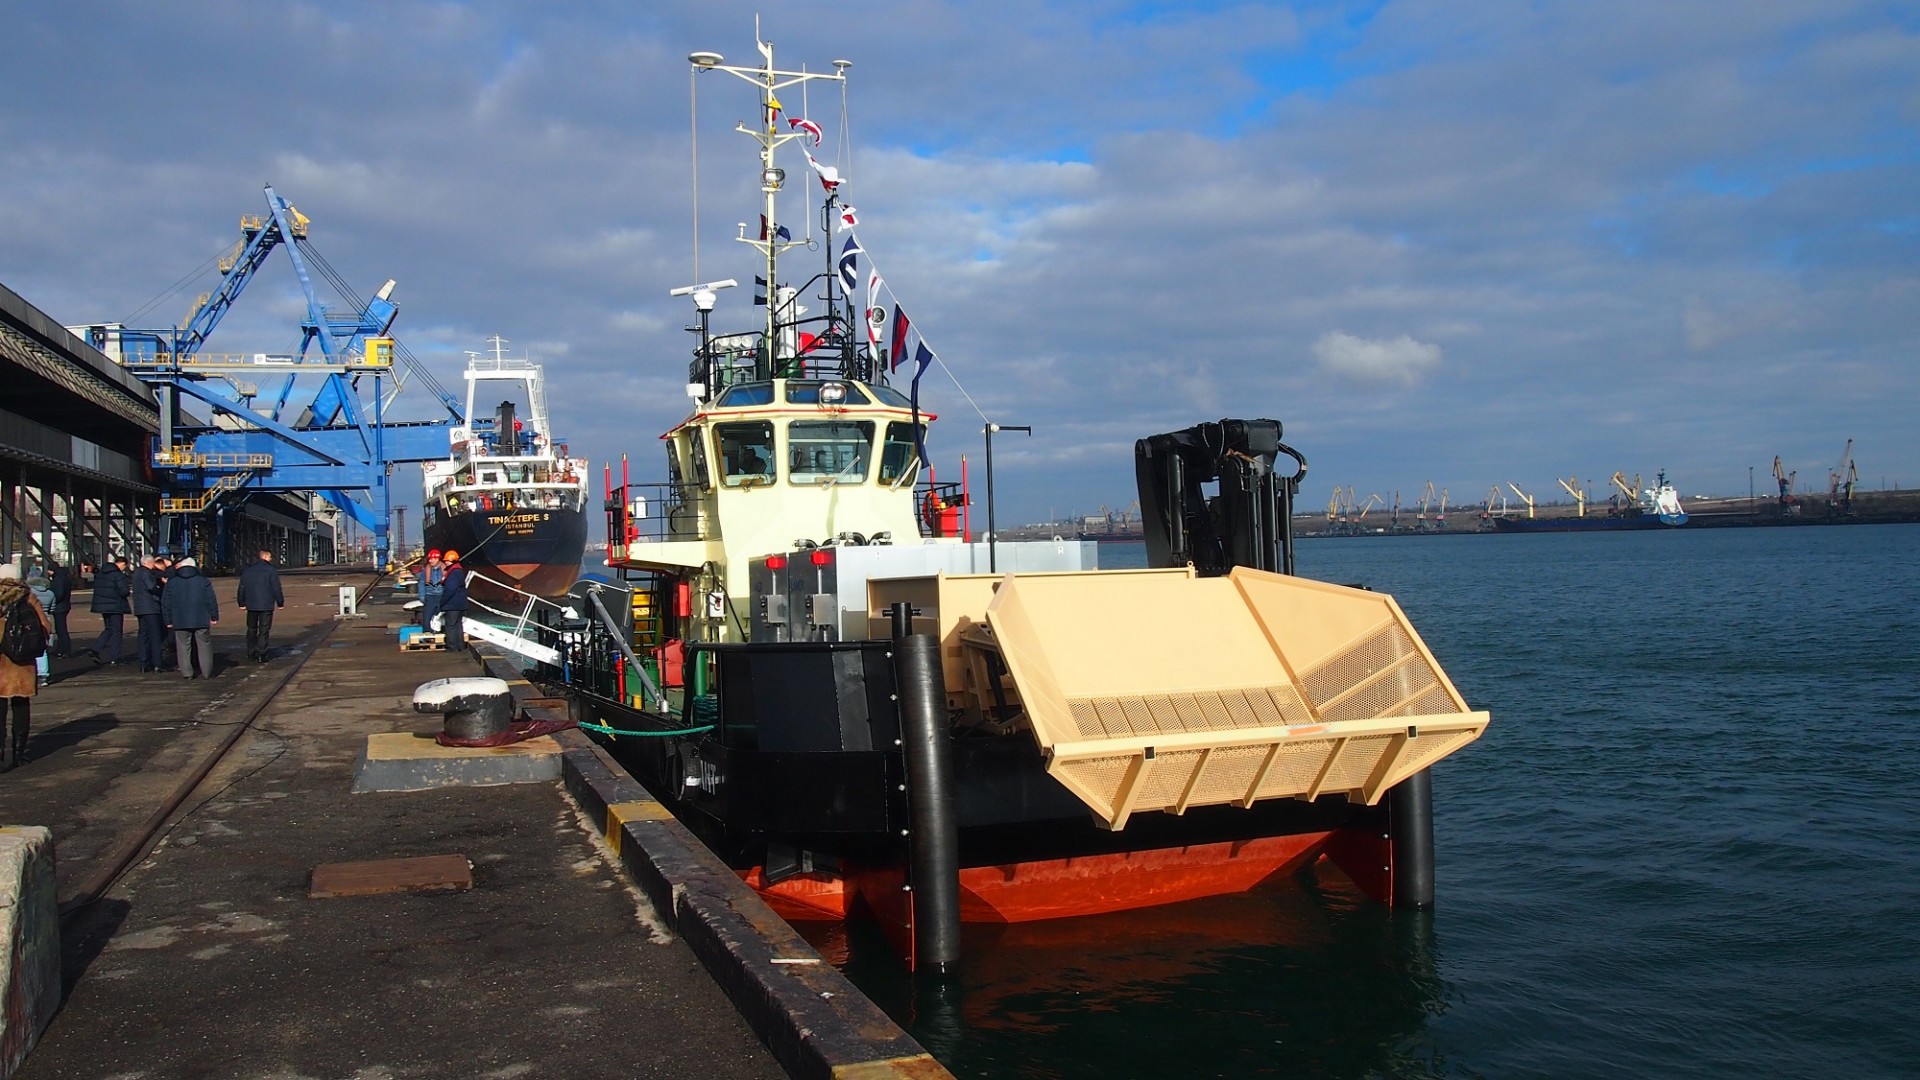 Sea Ant был построен на мощностях Херсонского судостроительного завода. Работы велись с 24 ноября 2015 года. 28 октября 2016 года нефтемусоросборщик был спущен на воду. Позже судно успешно совершило переход с ХСЗ в порт приписки.